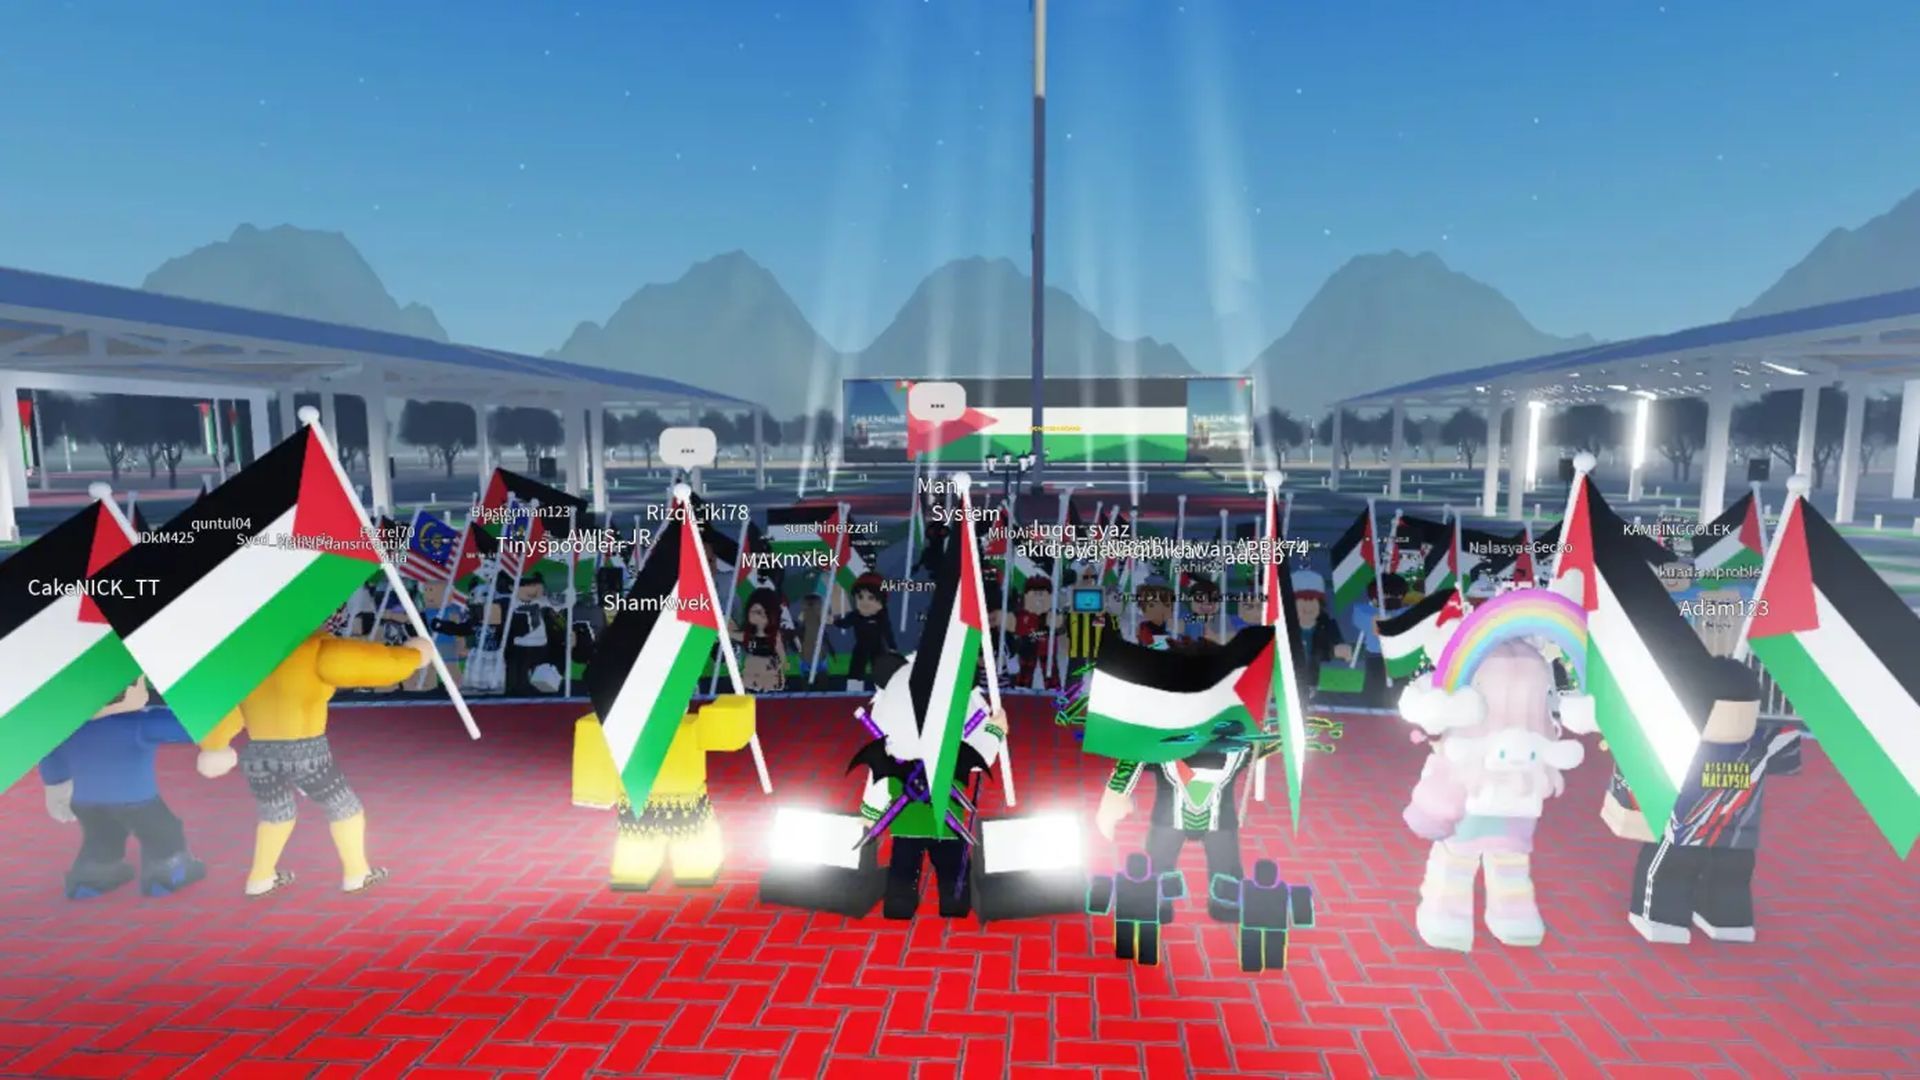 Roblox Palestine protest